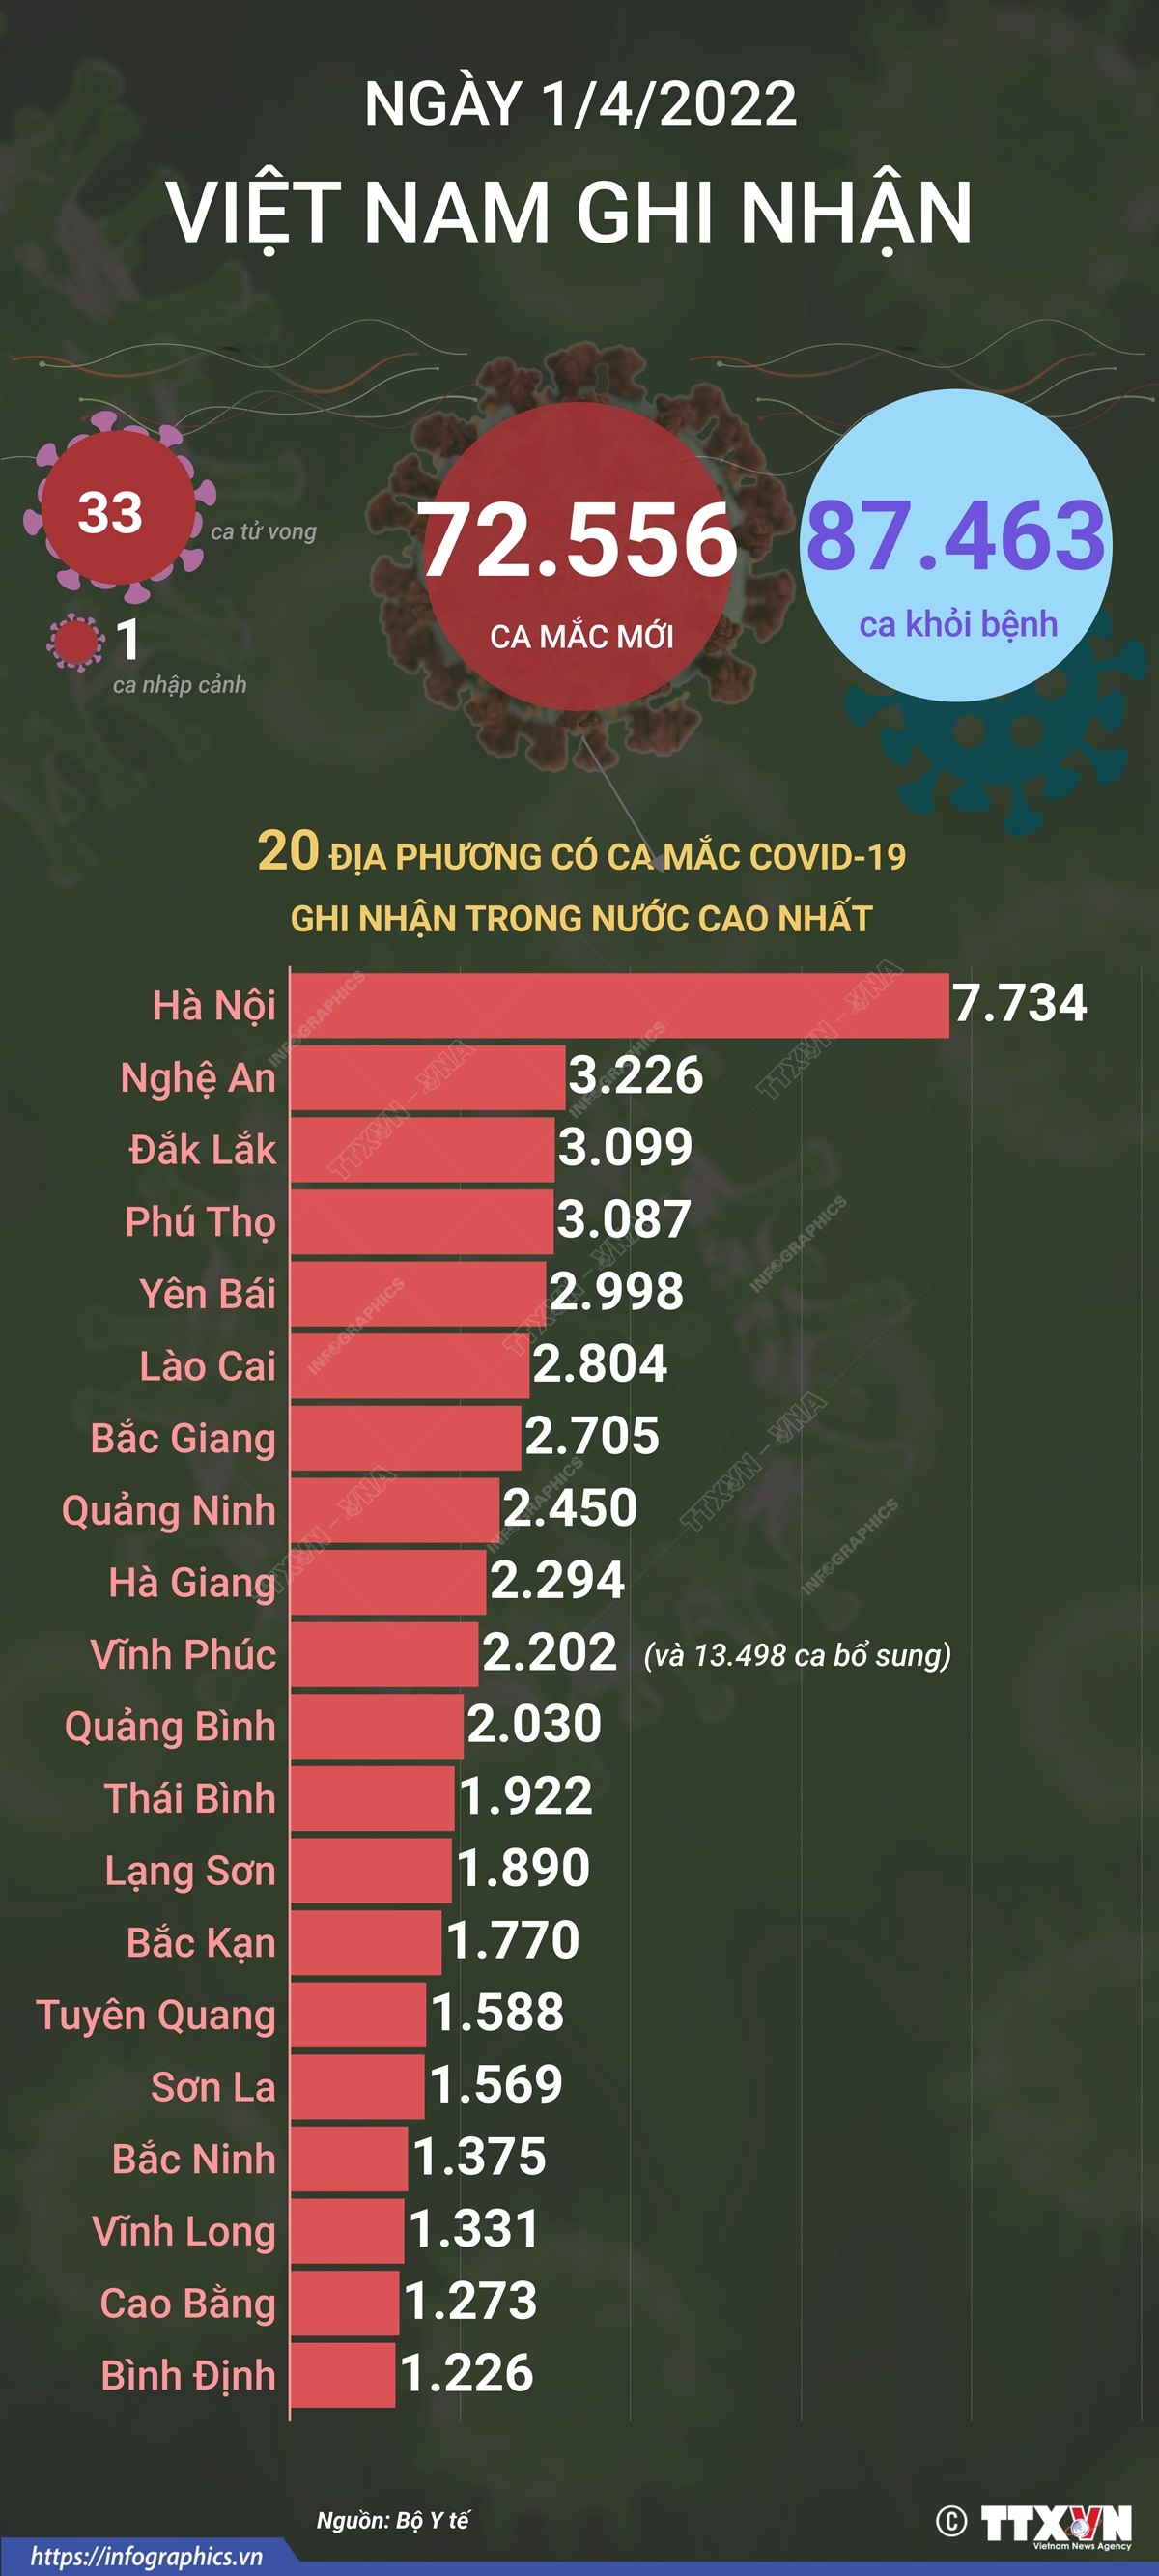 Ngày 1/4/2022, Việt Nam ghi nhận 72.556 ca mắc mới và 33 ca tử vong do COVID-19